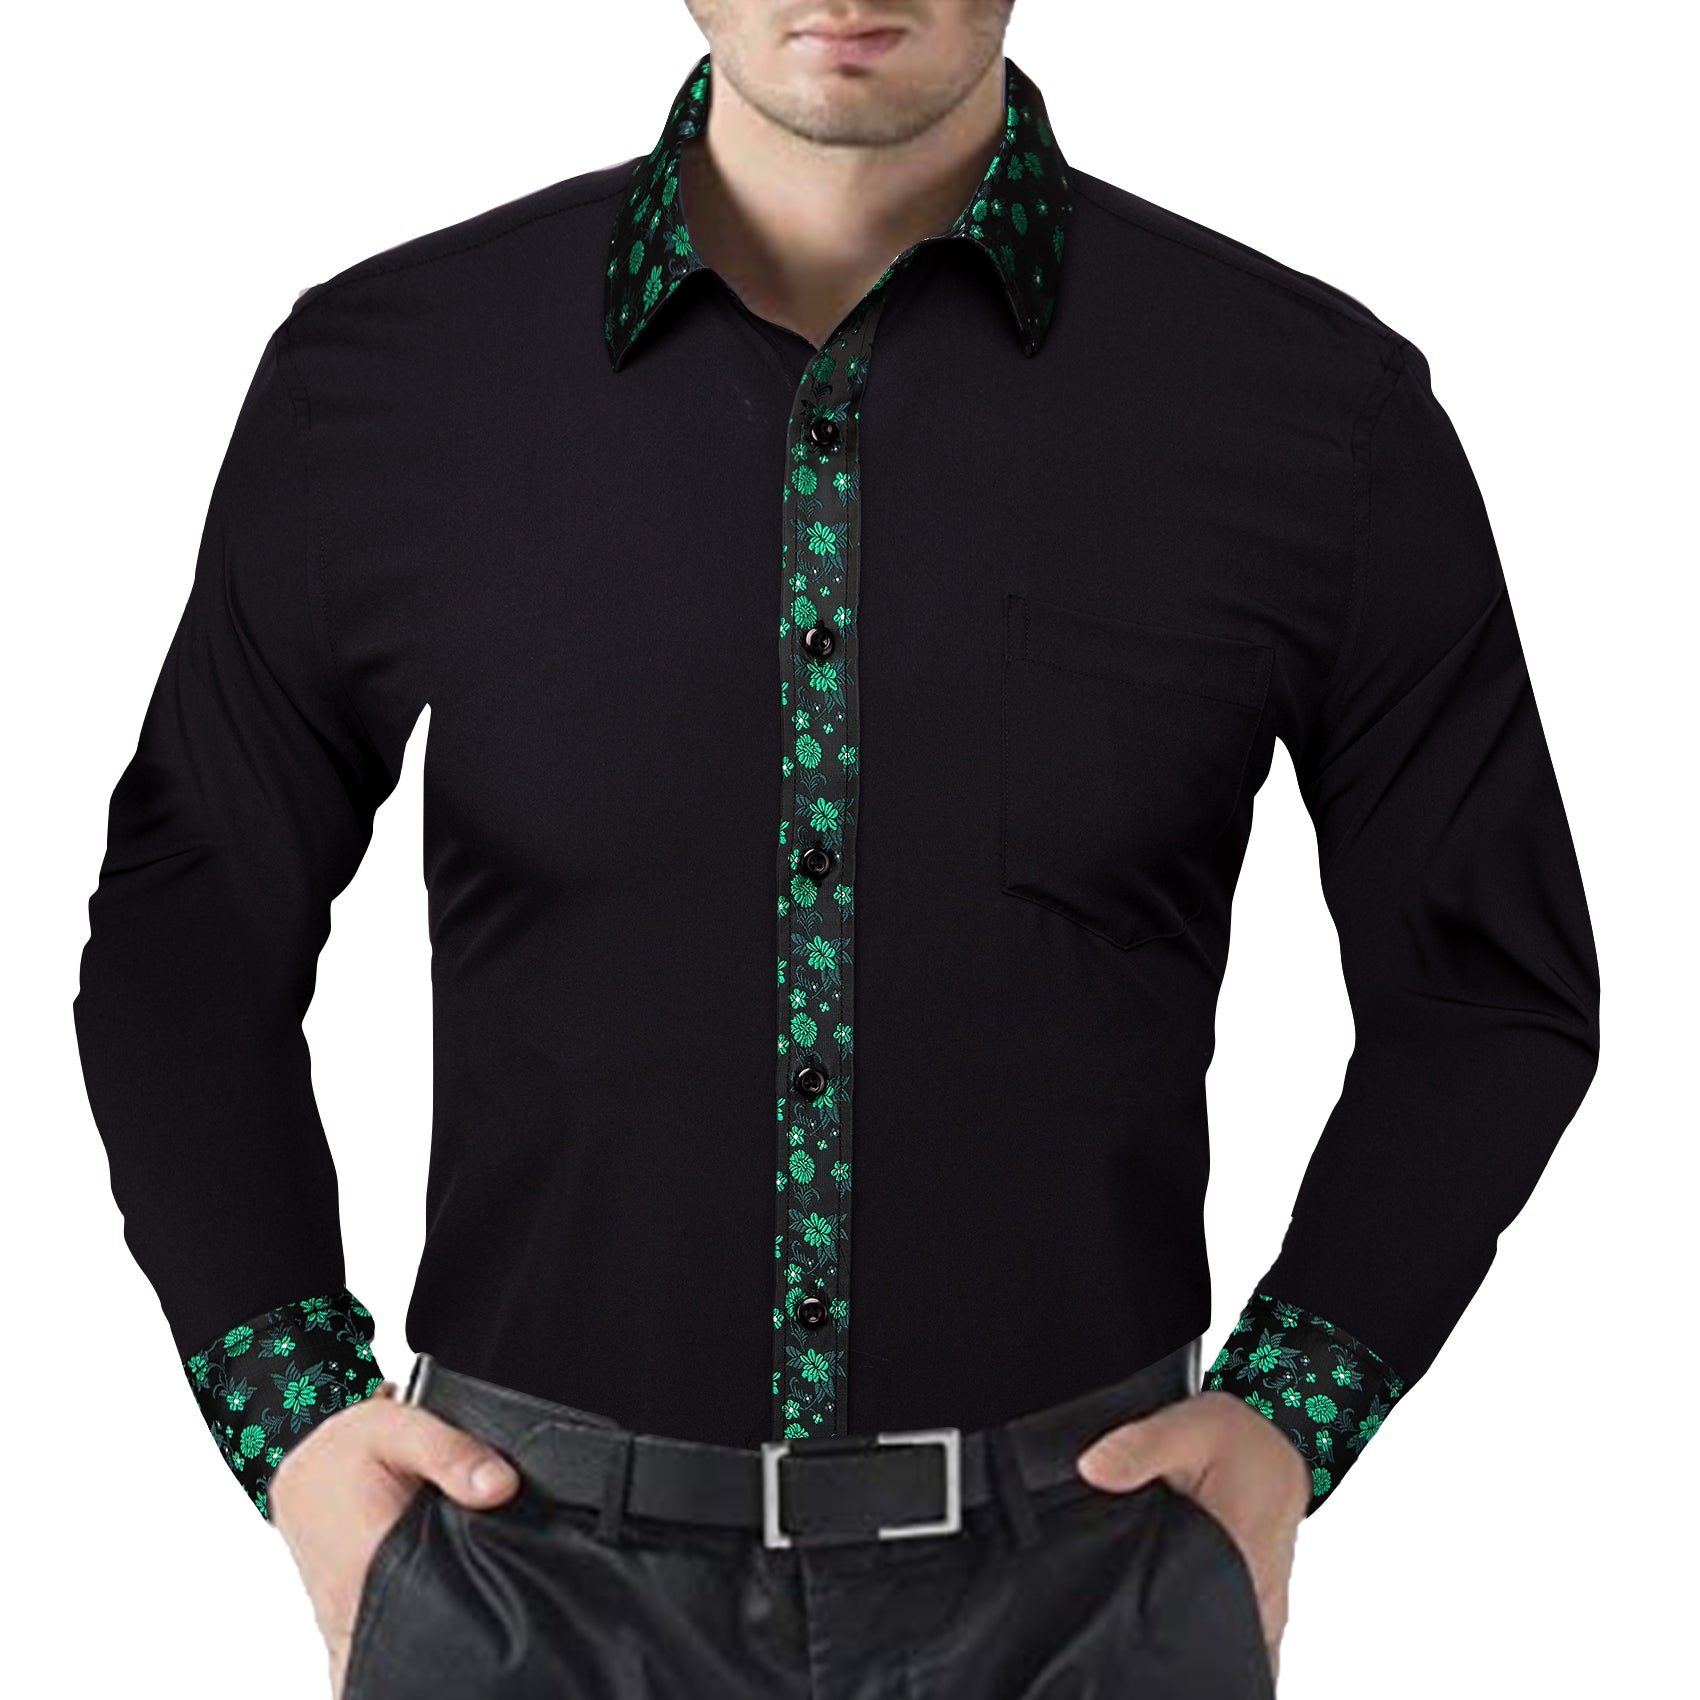 Barry.wang Black Green Splicing Men's Business Shirt